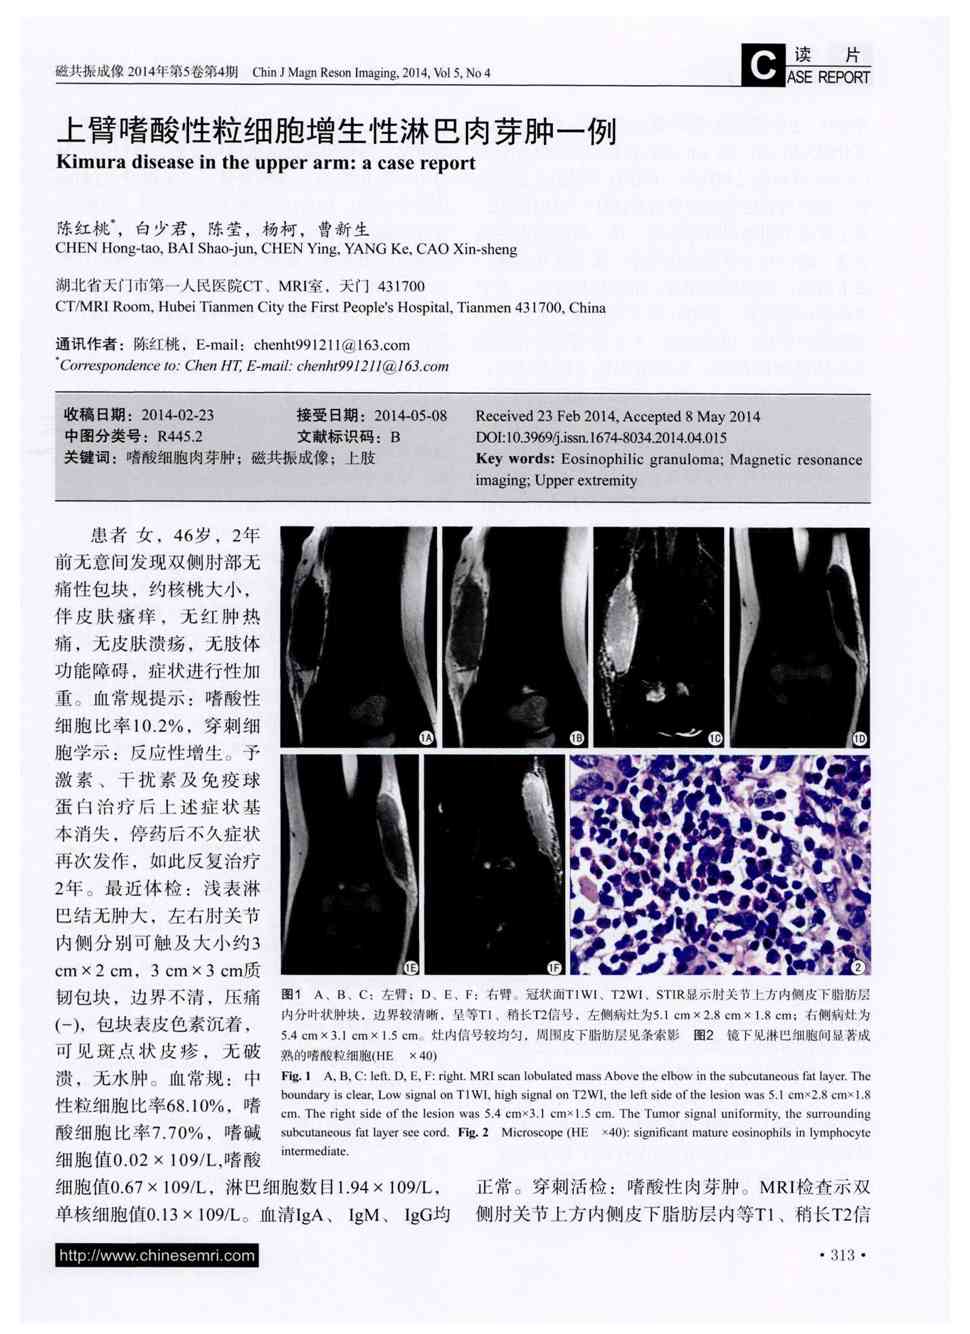 期刊上臂嗜酸性粒细胞增生性淋巴肉芽肿一例被引量:1       患者女